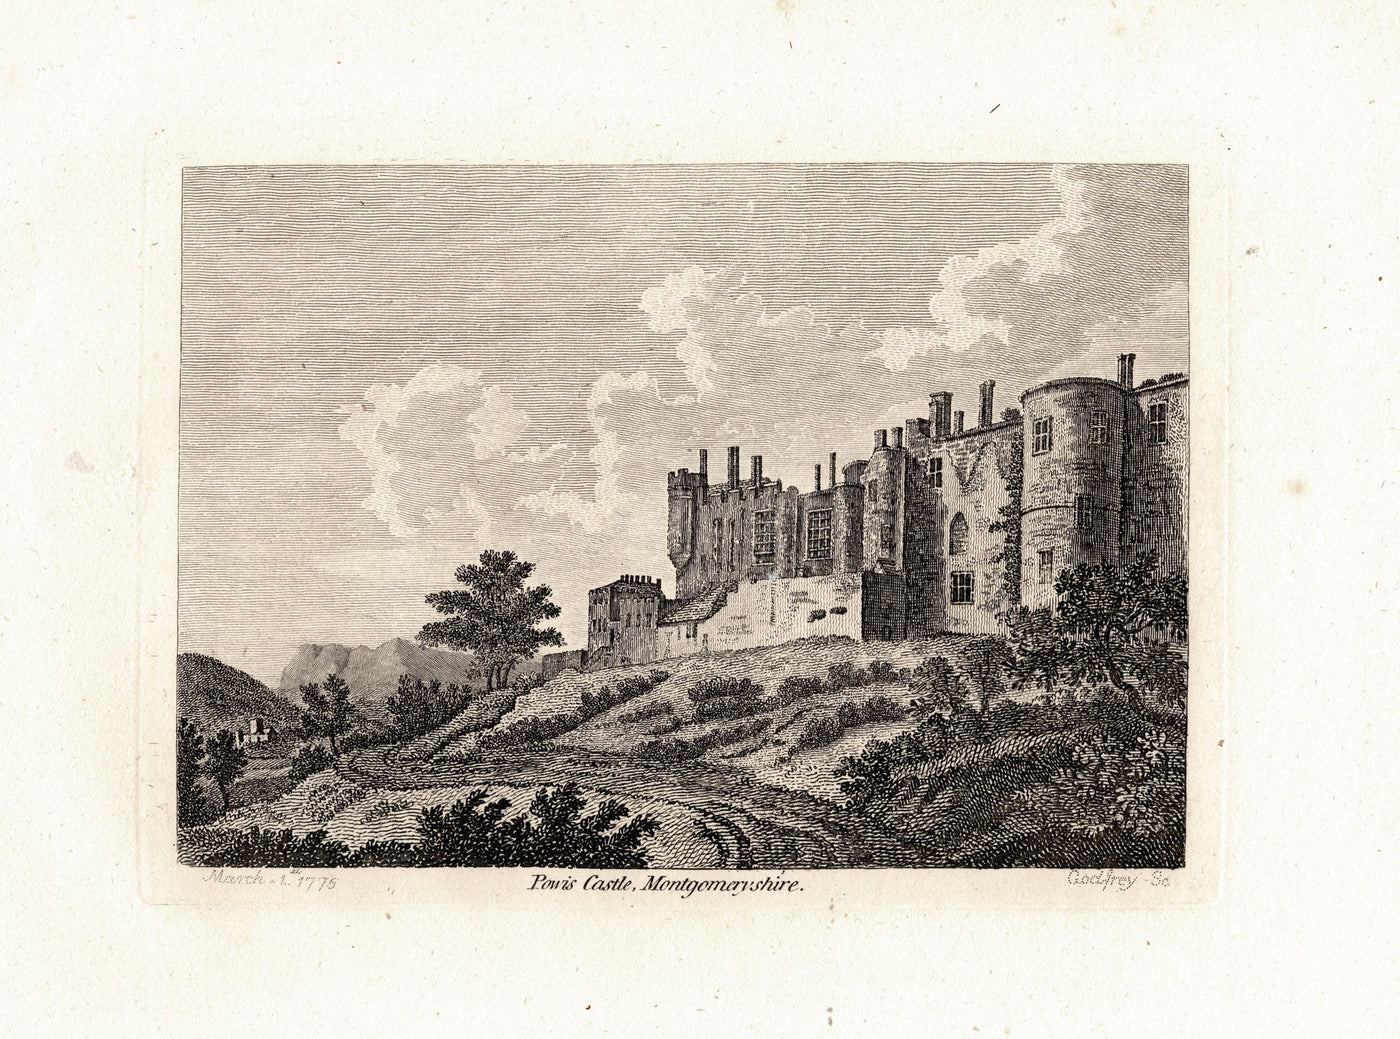 Powis Castle Montgomeryshire Wales antique print 1775